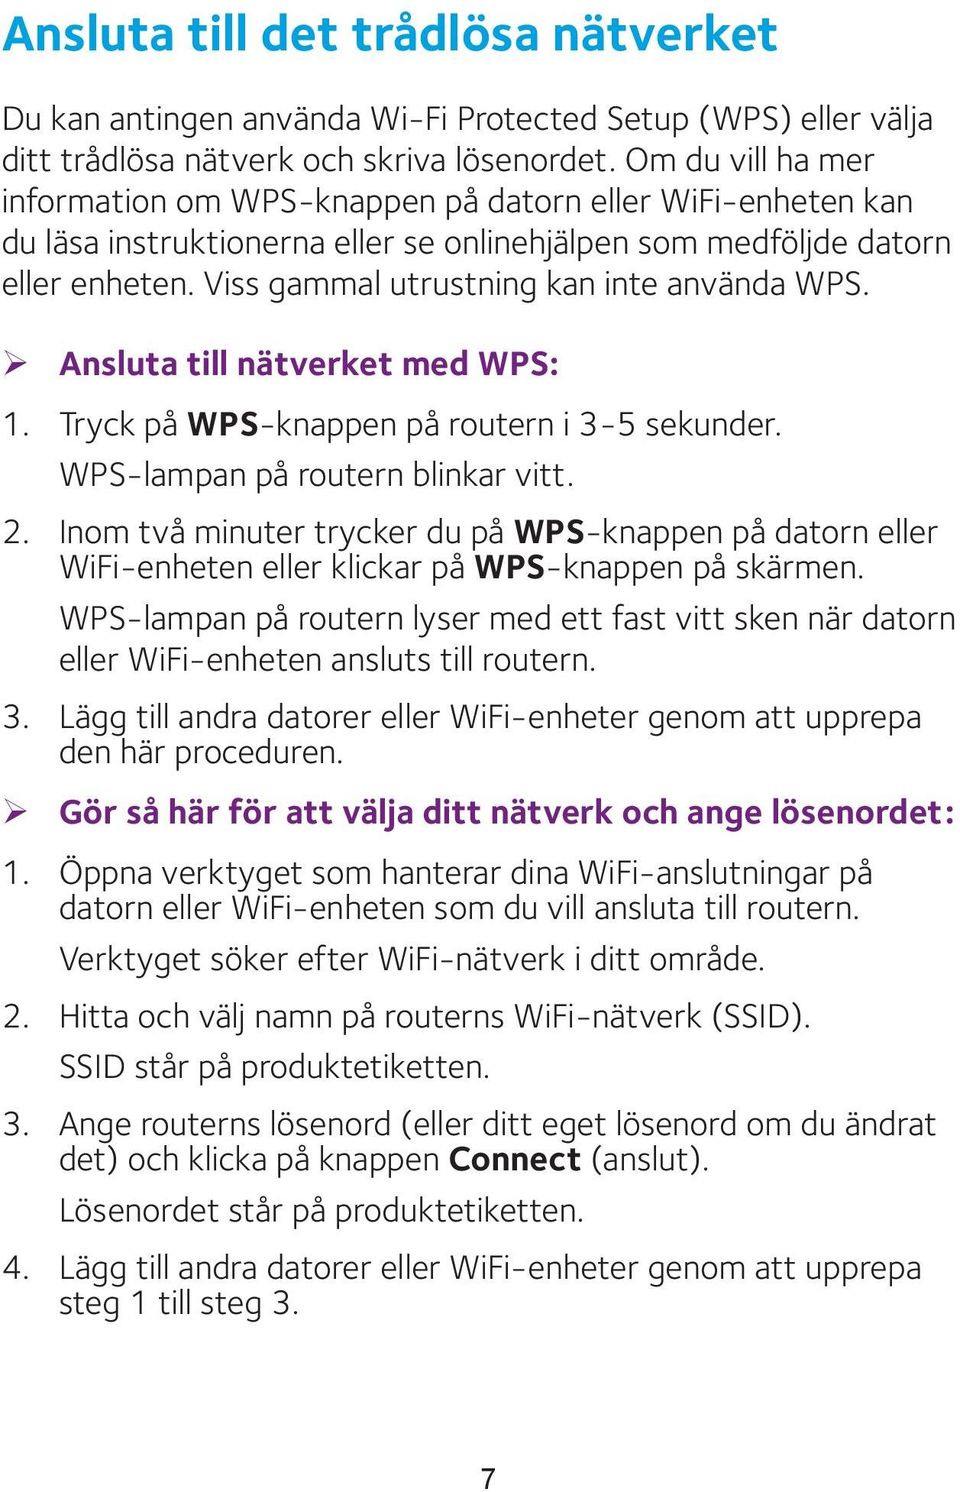 Viss gammal utrustning kan inte använda WPS. ¾ Ansluta till nätverket med WPS: 1. Tryck på WPS-knappen på routern i 3-5 sekunder. WPS-lampan på routern blinkar vitt. 2.